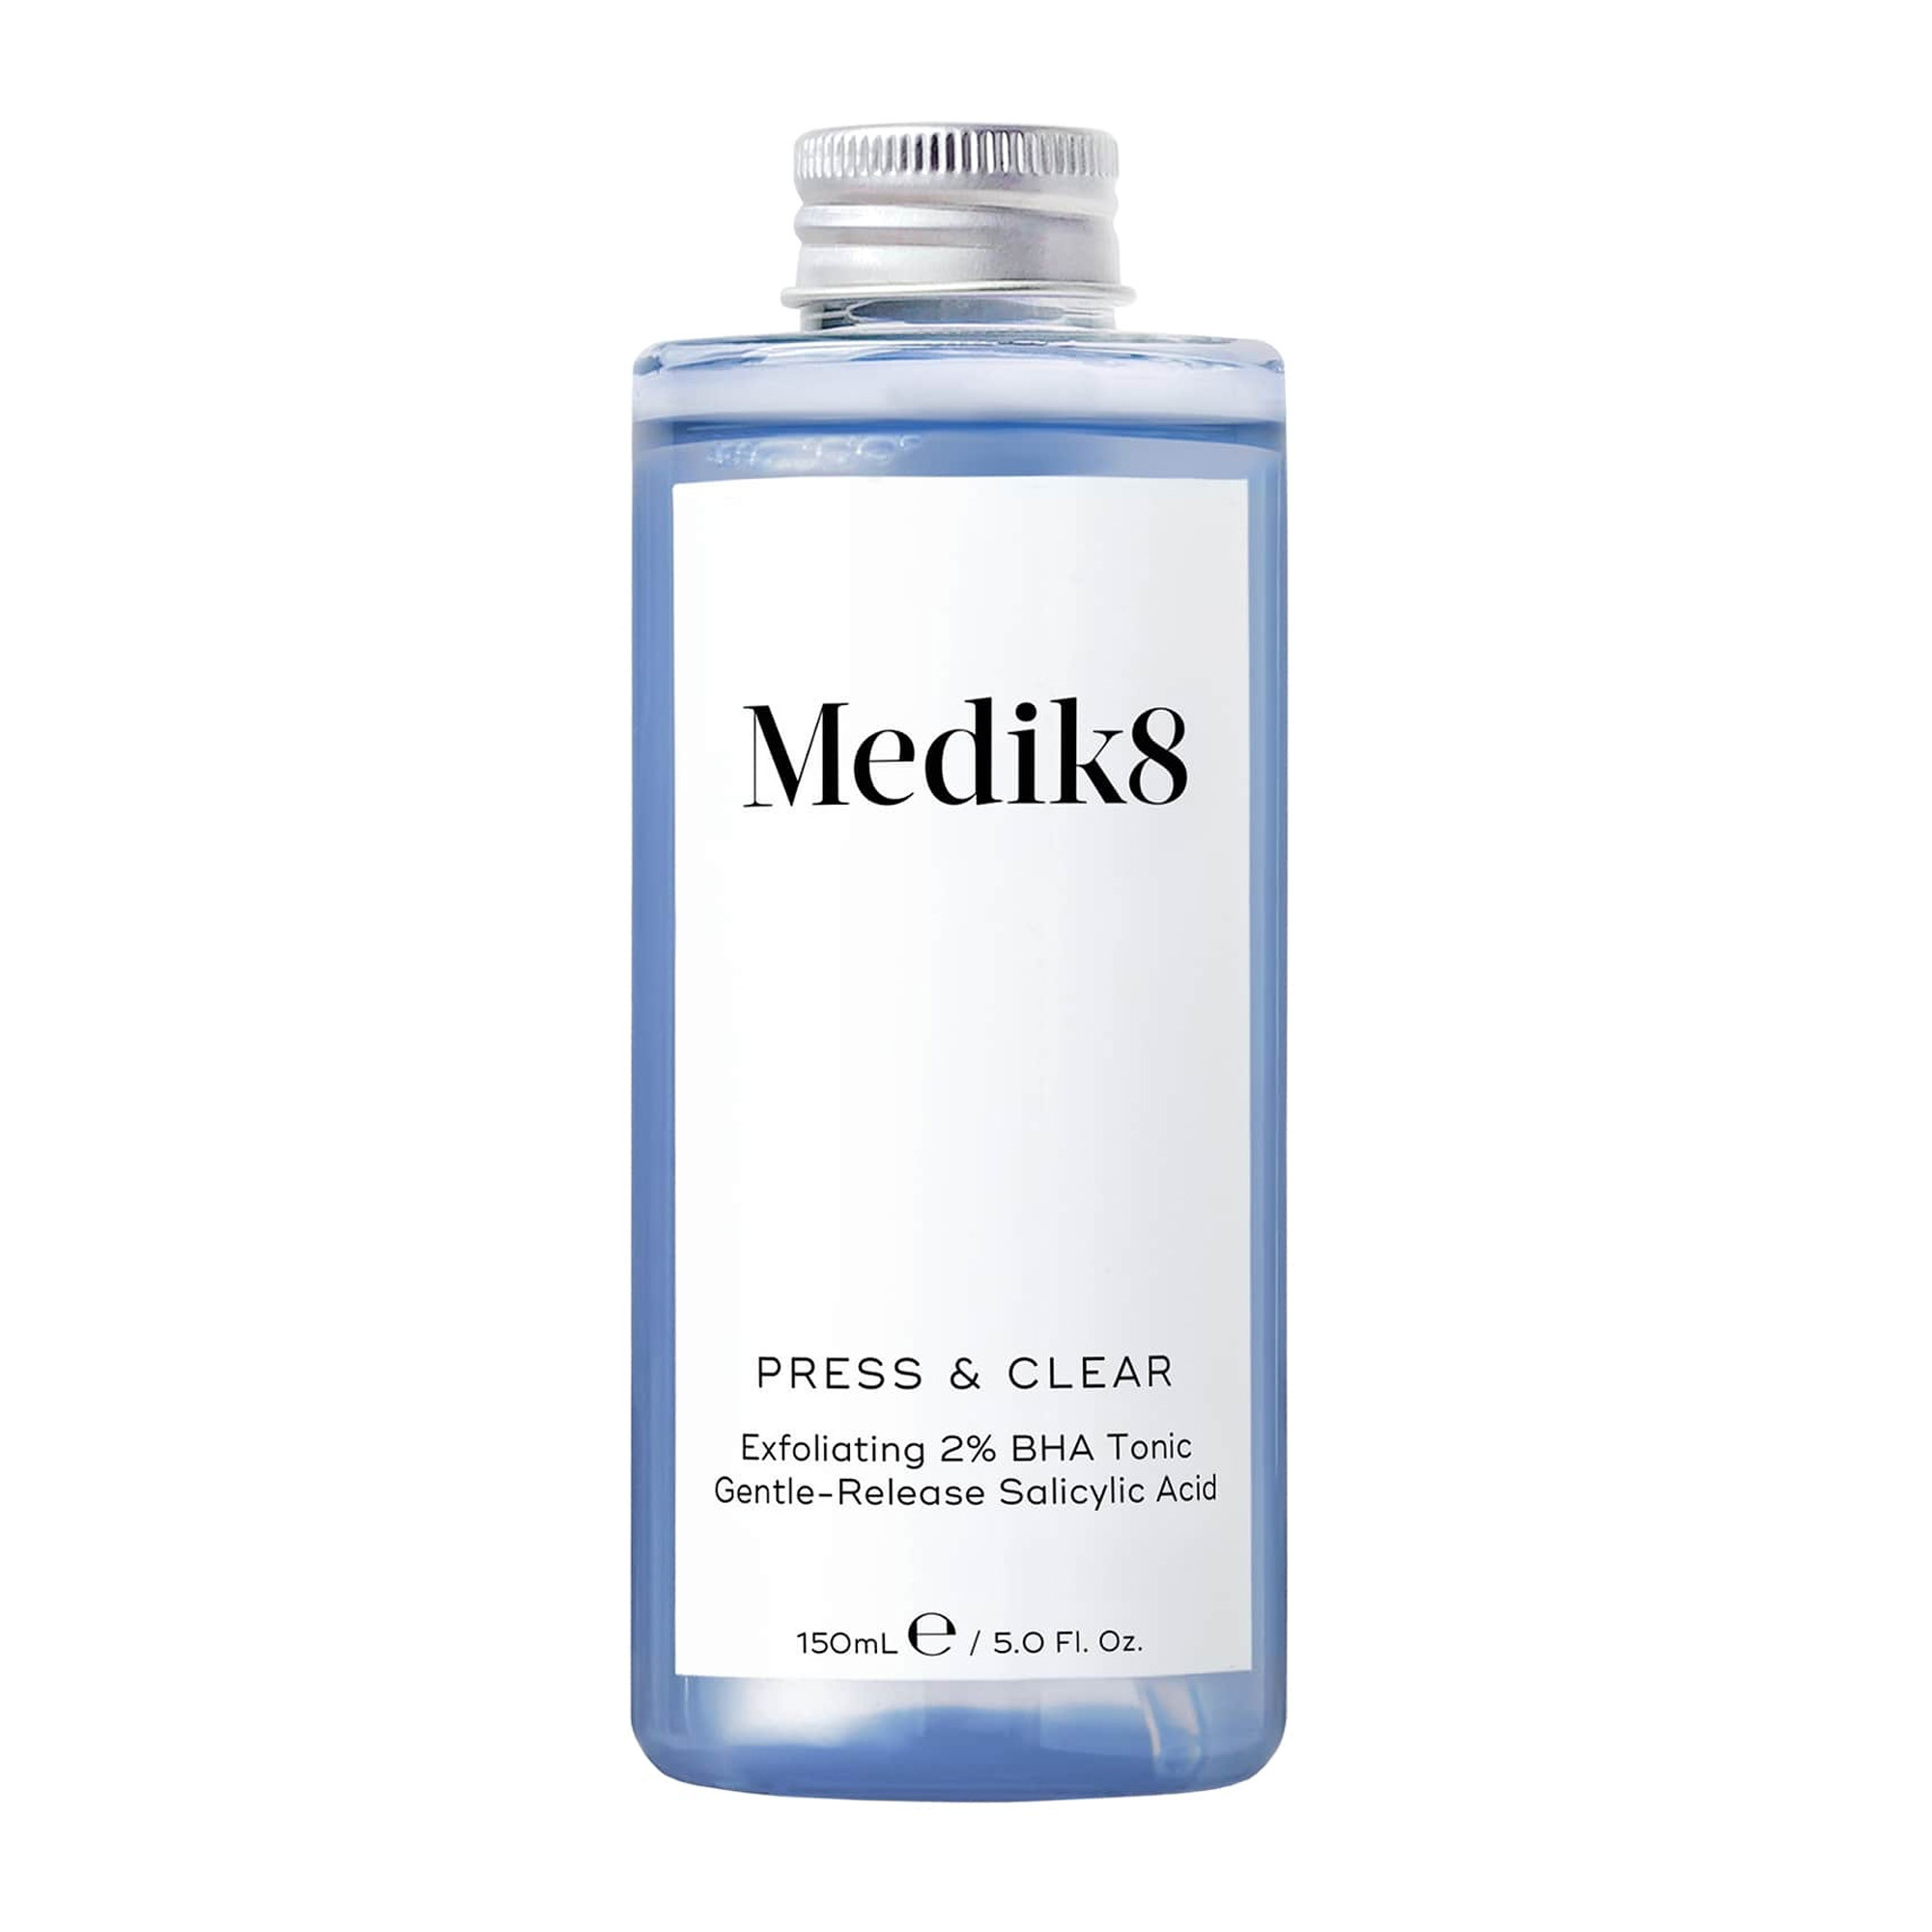 Medik8 Press And Clear - ВНА-тоник с 2% инкапсулированной салициловой кислотой для проблемной кожи